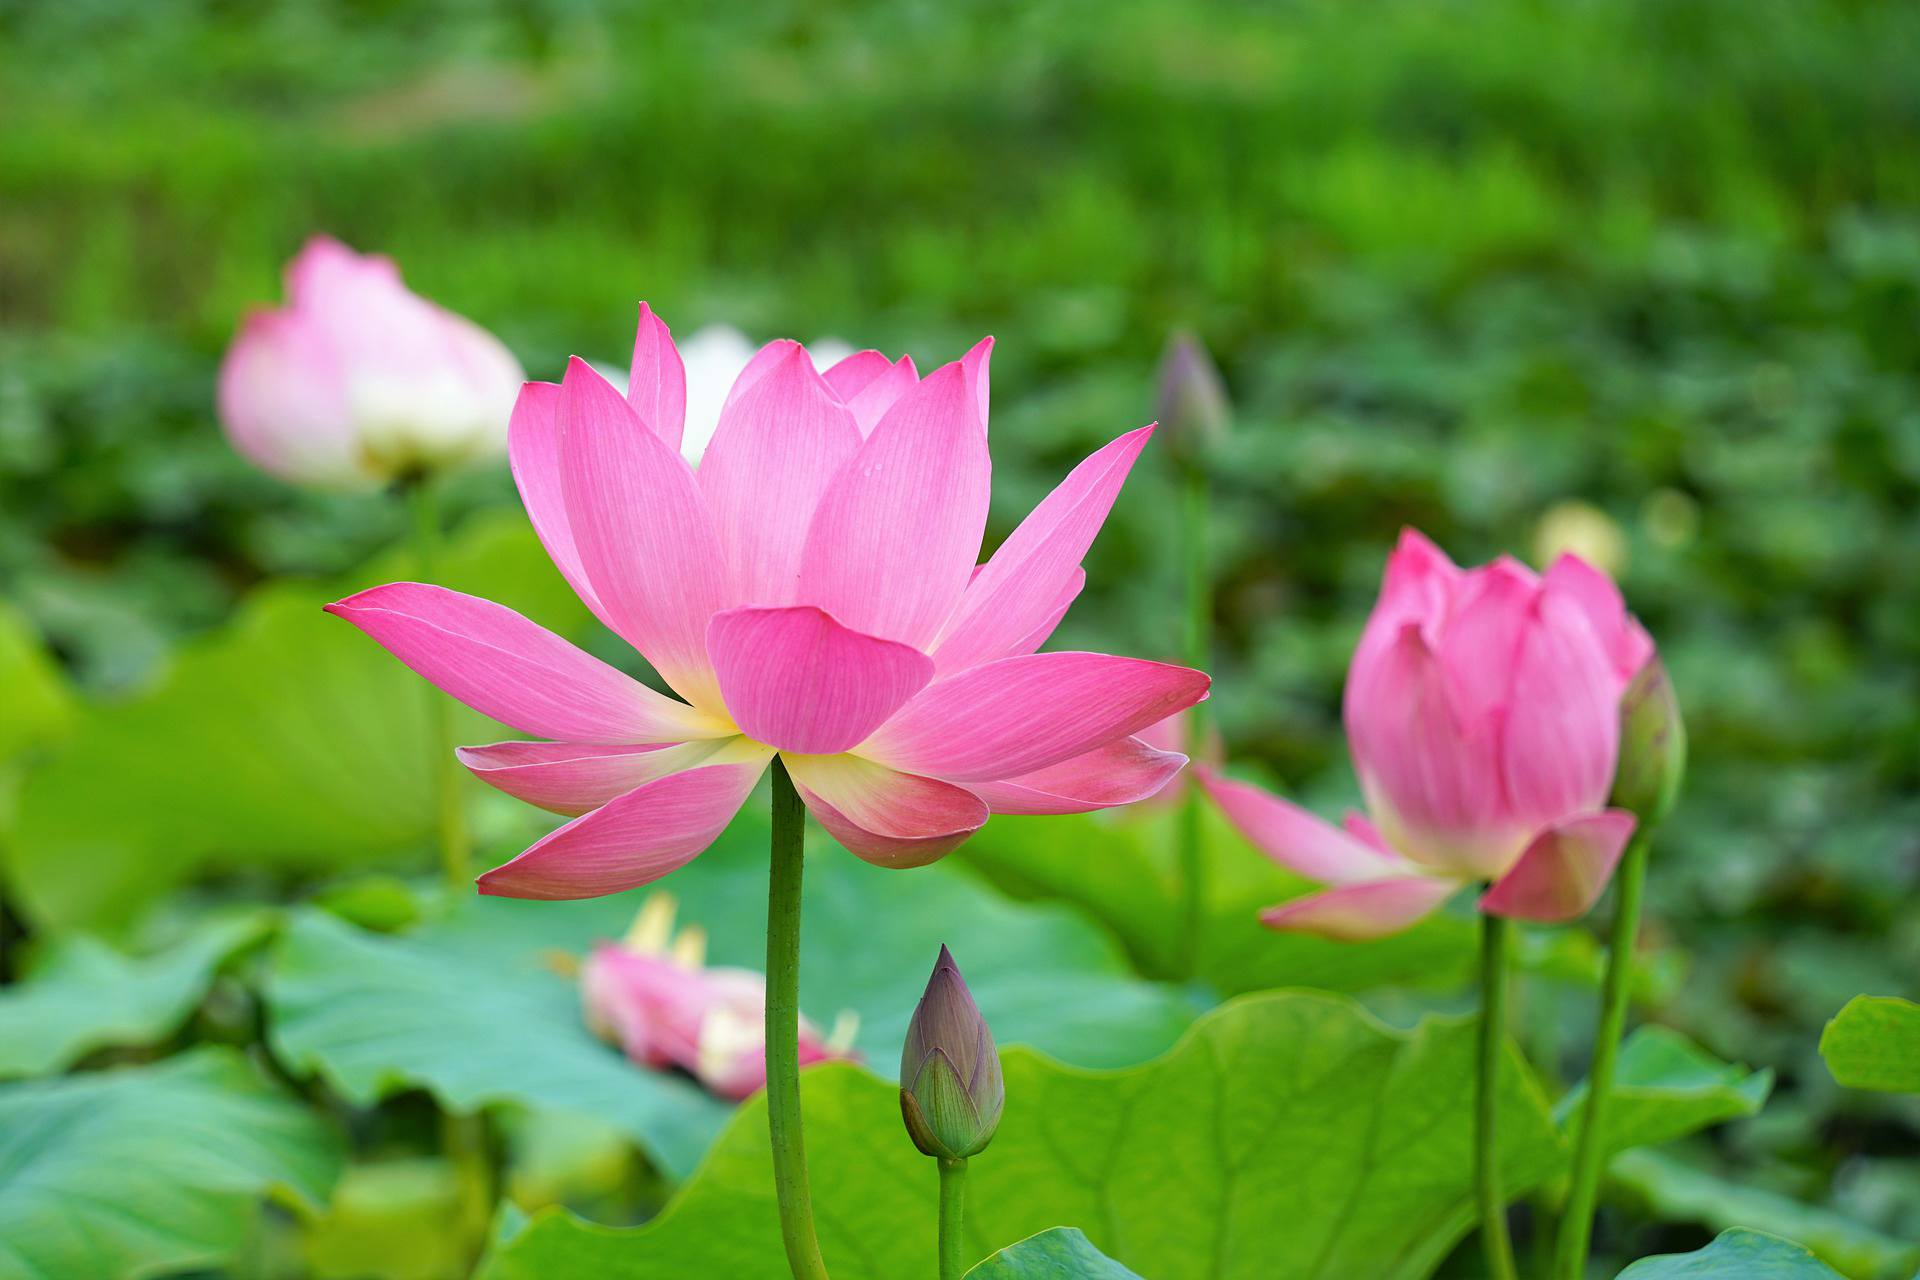 Bộ sưu tập hình ảnh hoa sen đẹp nhất từ Ky Nguyen Beauty sẽ khiến bạn tan chảy trong cảm giác tuyệt vời tuyệt đối. Tất cả những khoảnh khắc thời gian của công viên thơ mộng này sẽ là điểm nhấn cho một ngày đầy tính thư giãn và cảm hứng.